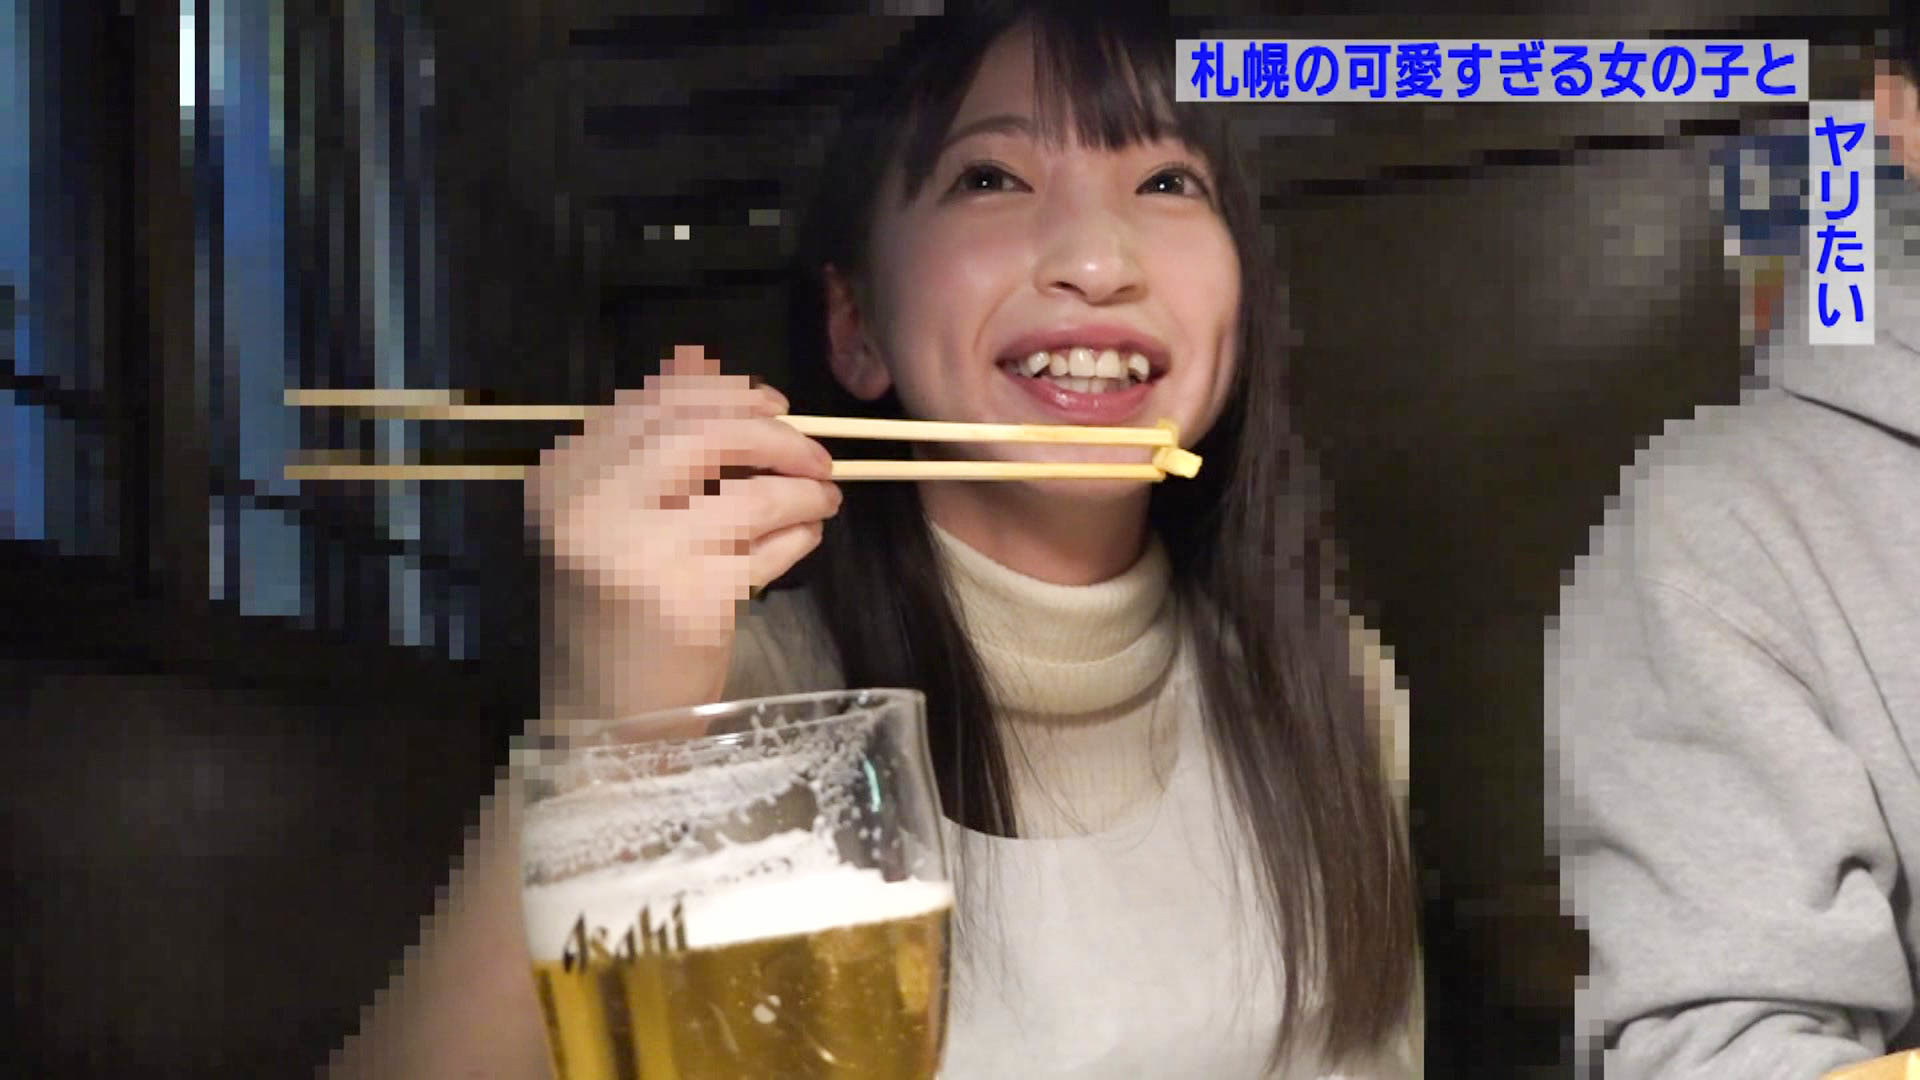 札幌の街で見かけた北海道弁が可愛すぎる女の子とどうしてもヤリたい（1） イメージ4